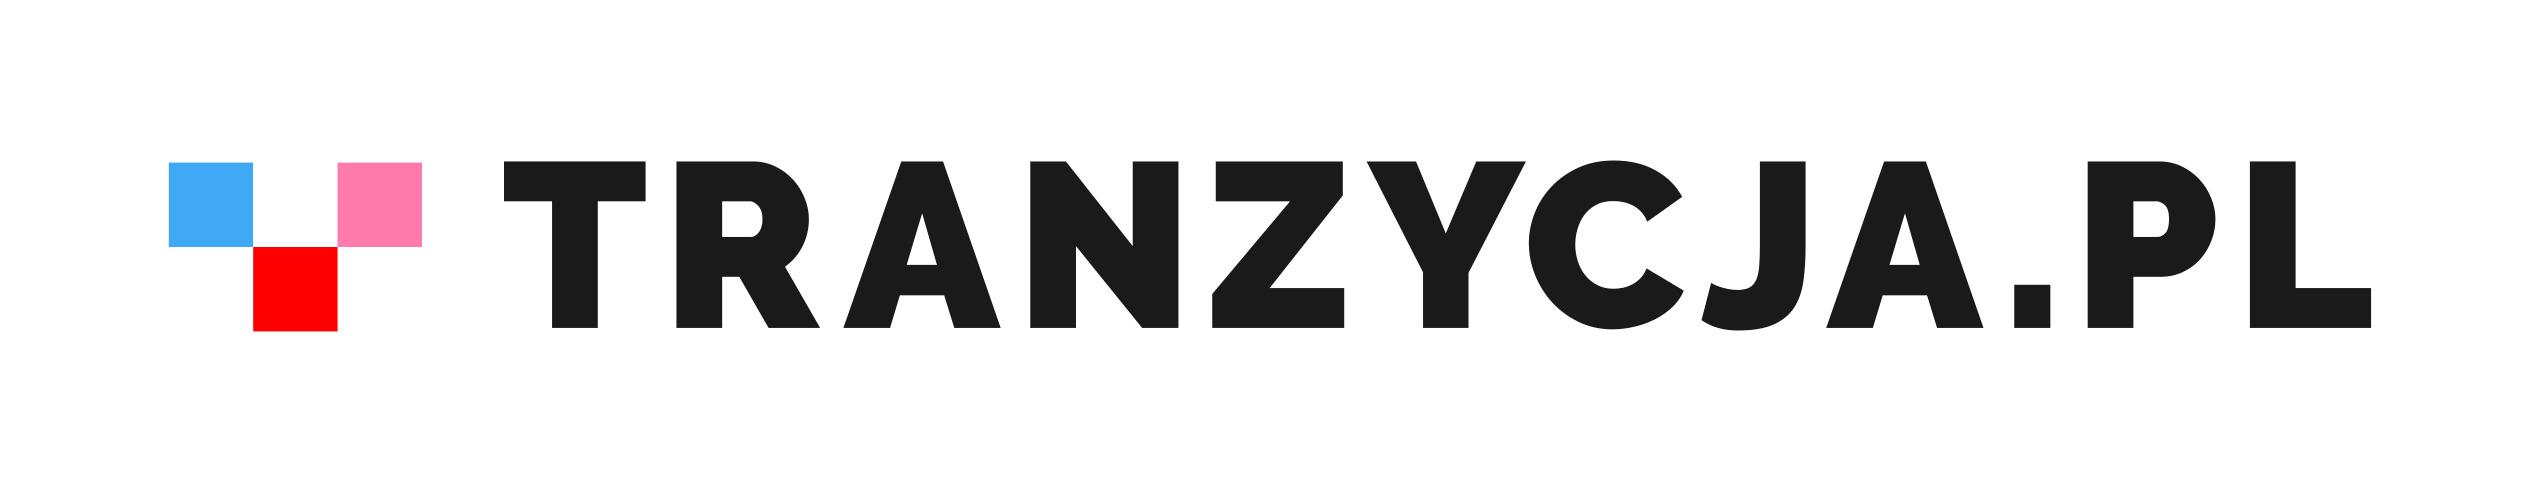 Tranzycja.pl, logo